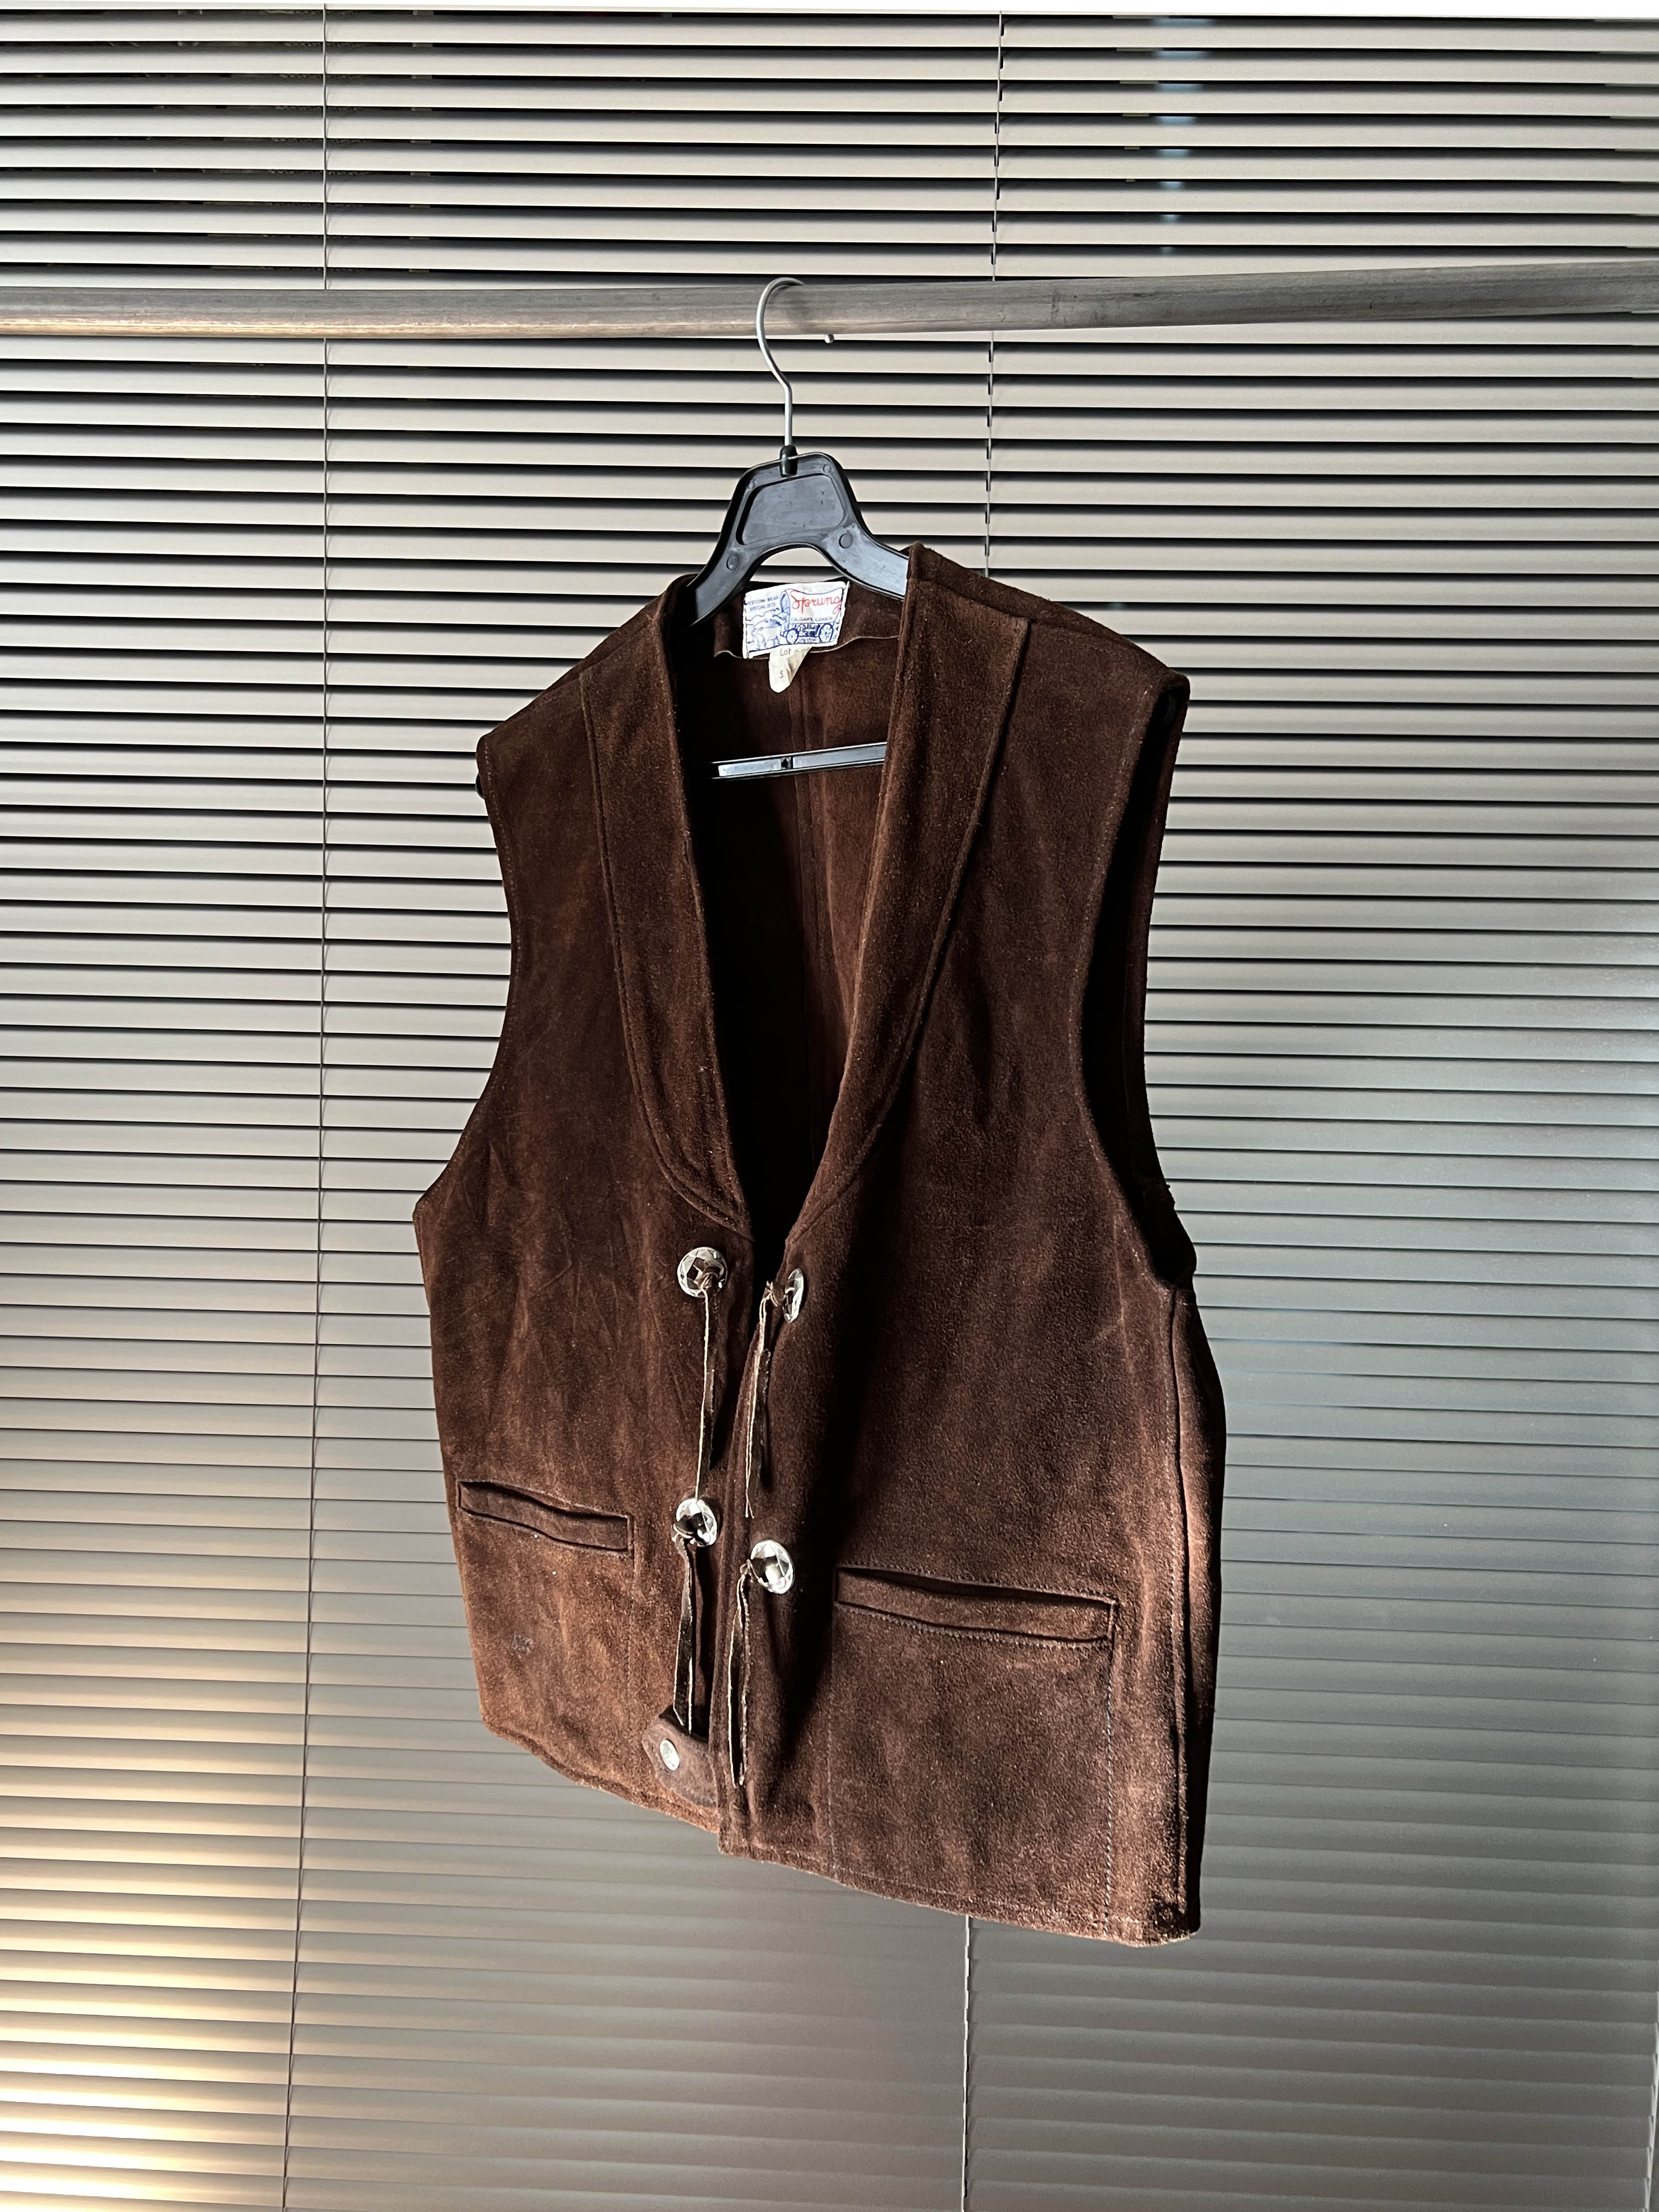 western leather jacket